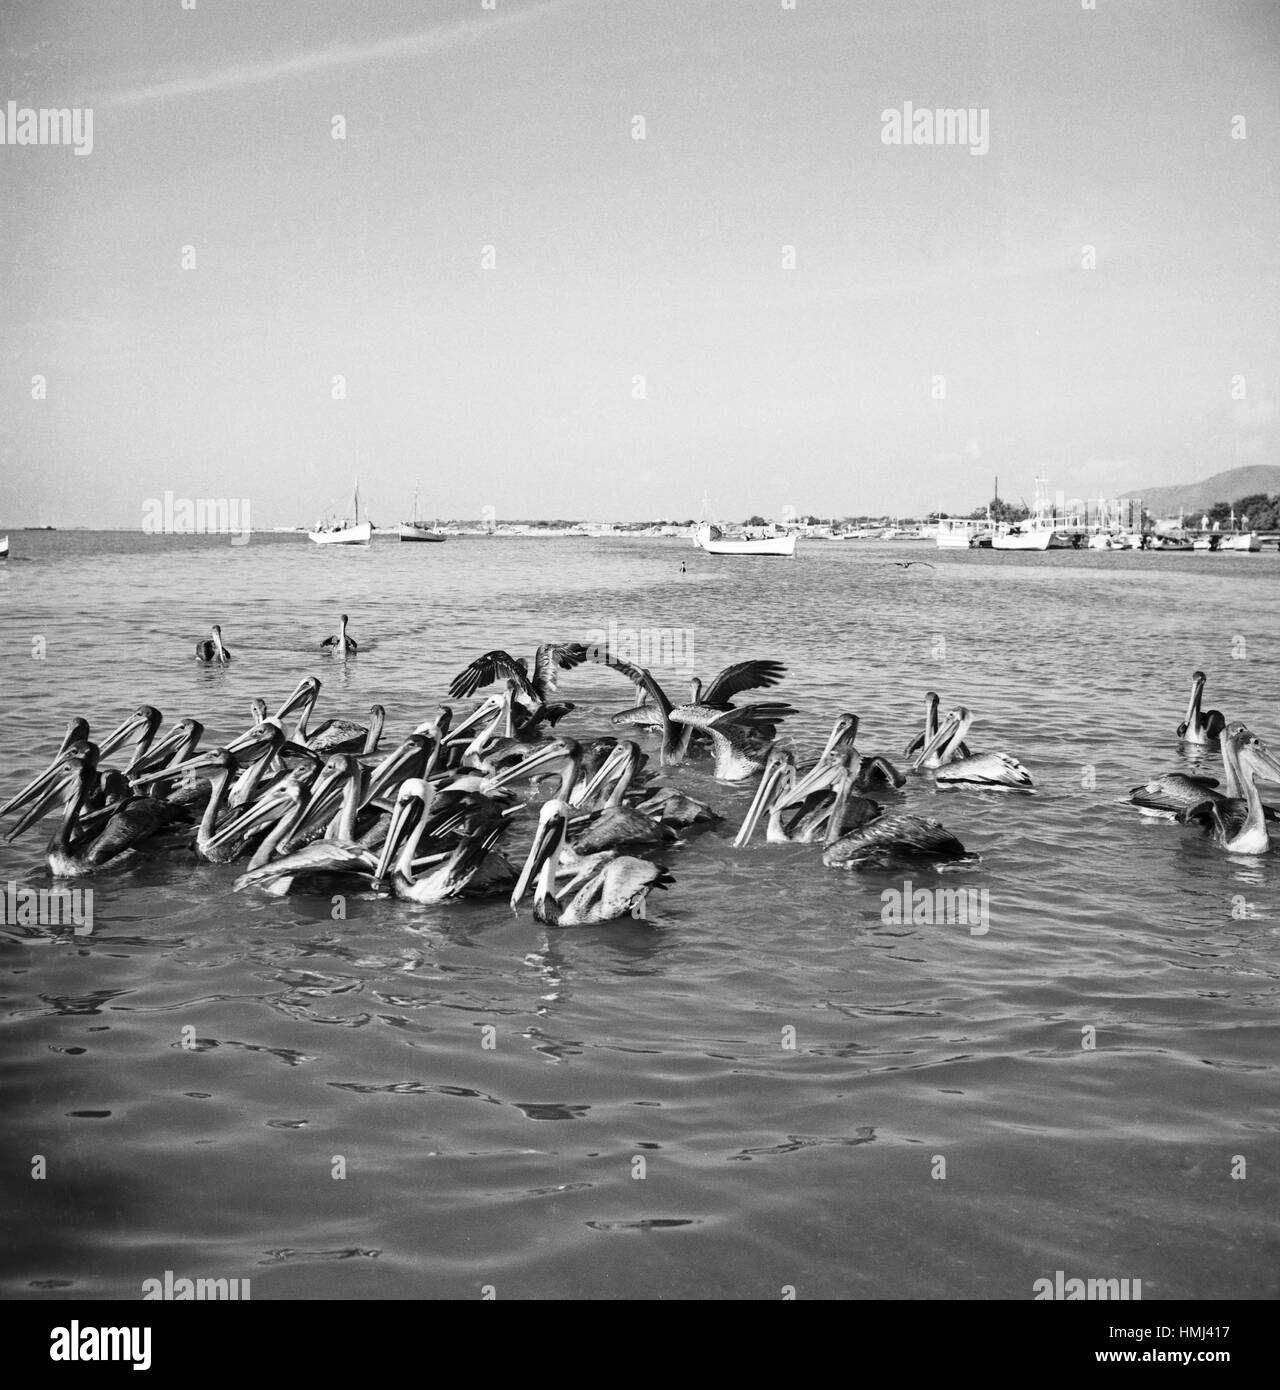 Pelikane am Ufer der Isla Margarita, Venezuela 1966. Pelican next to the Coast of the Isla Margarita, Venezuela 1966. Stock Photo